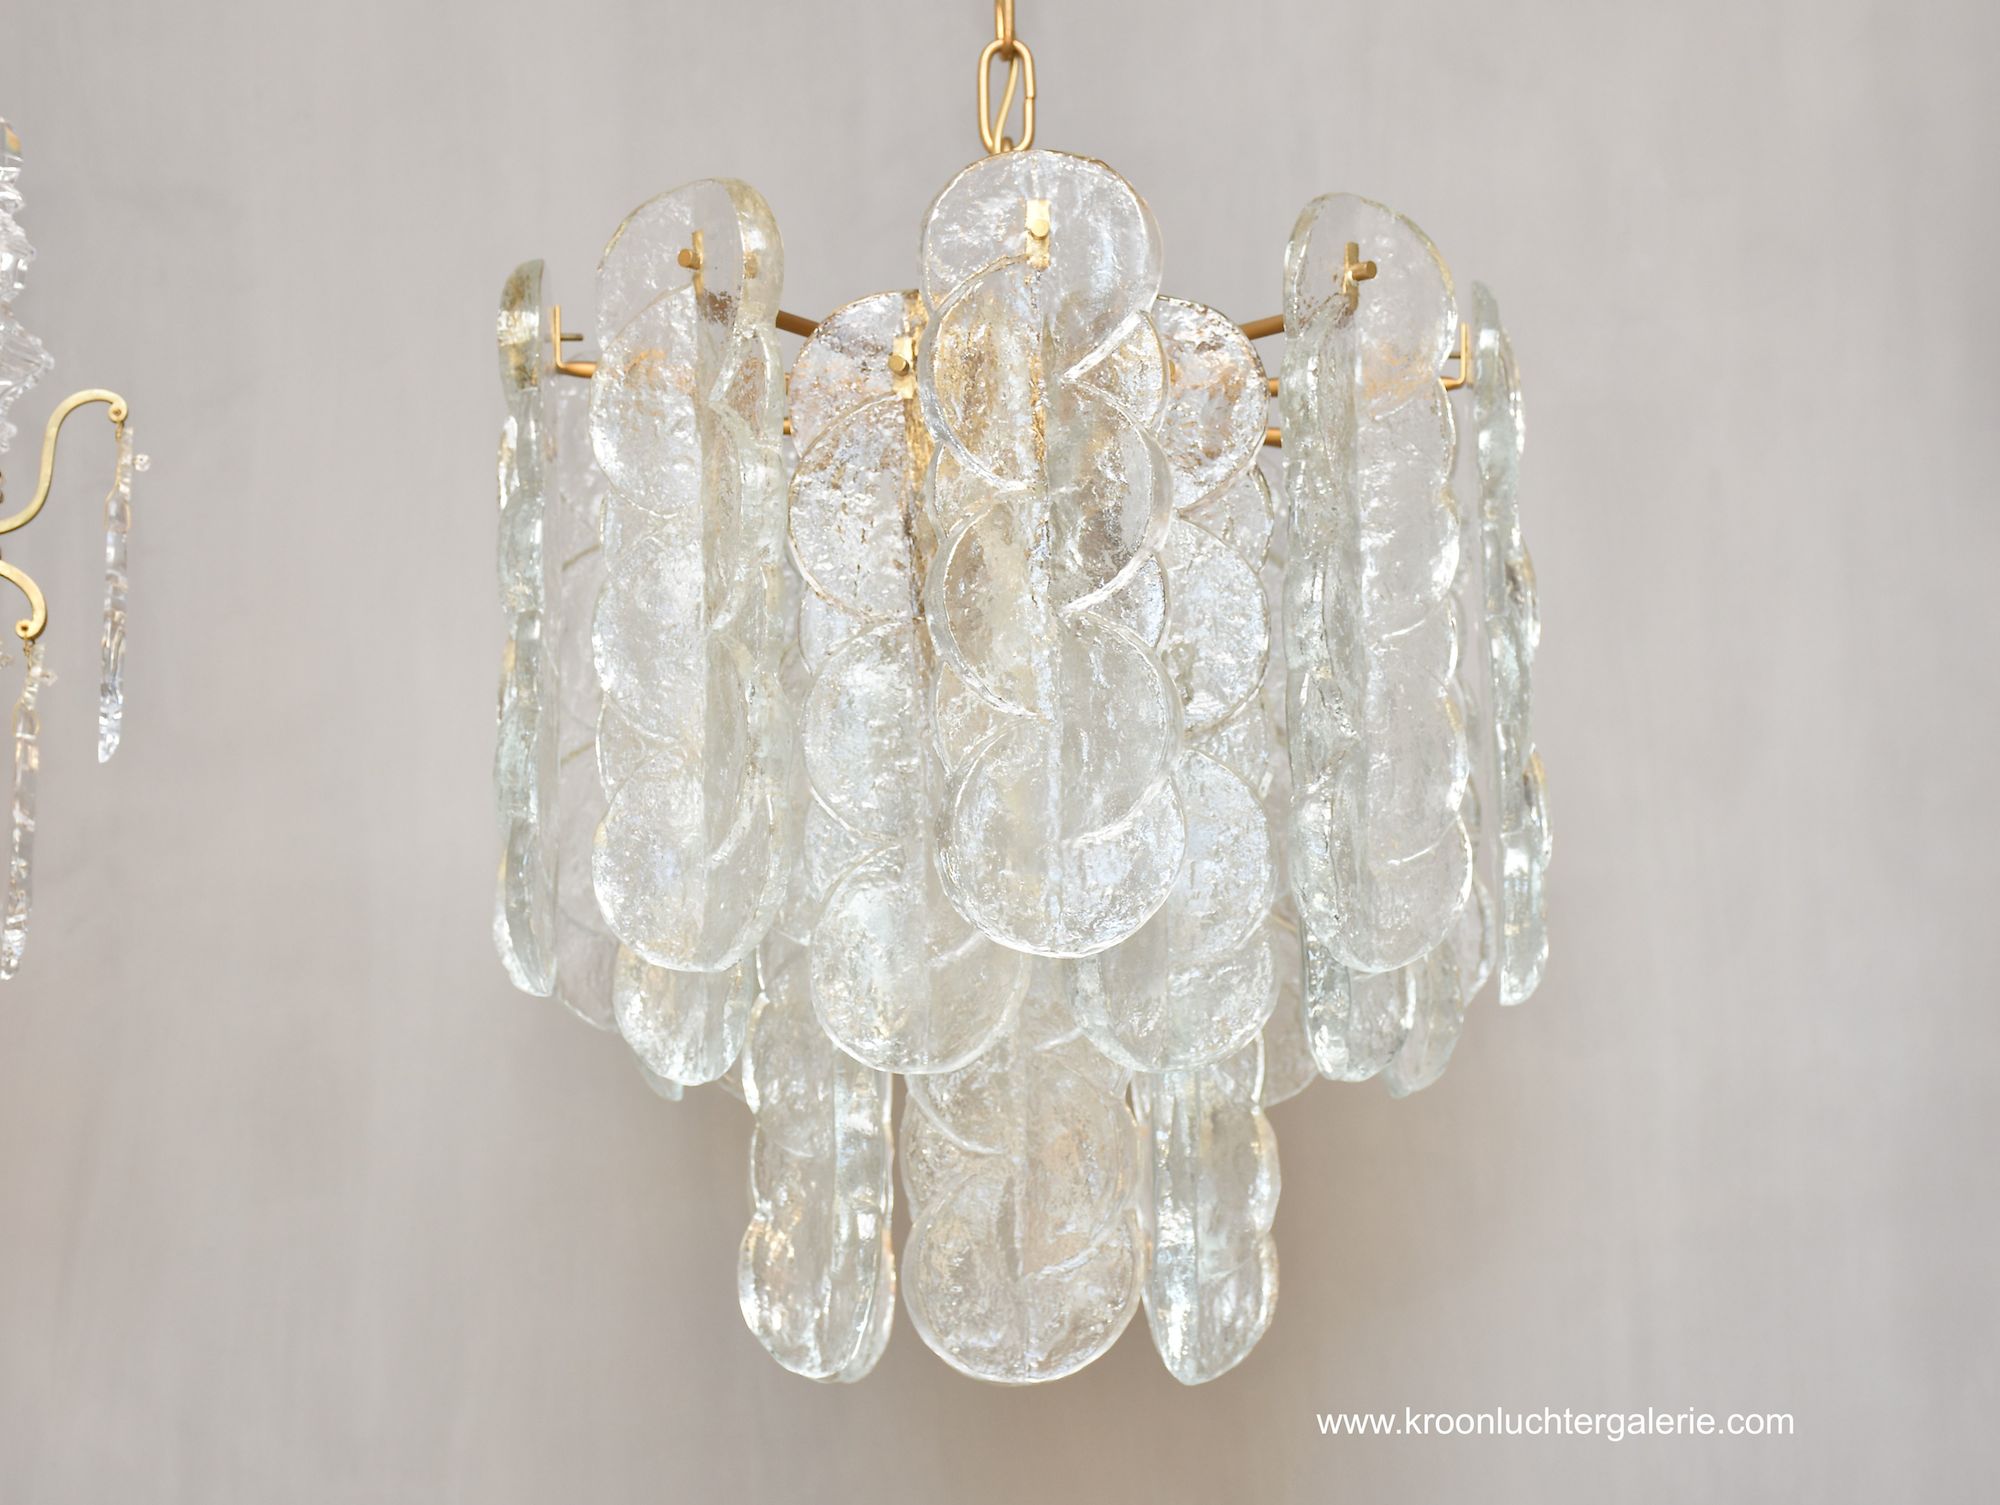 Large Murano chandelier by J.T. KALMAR